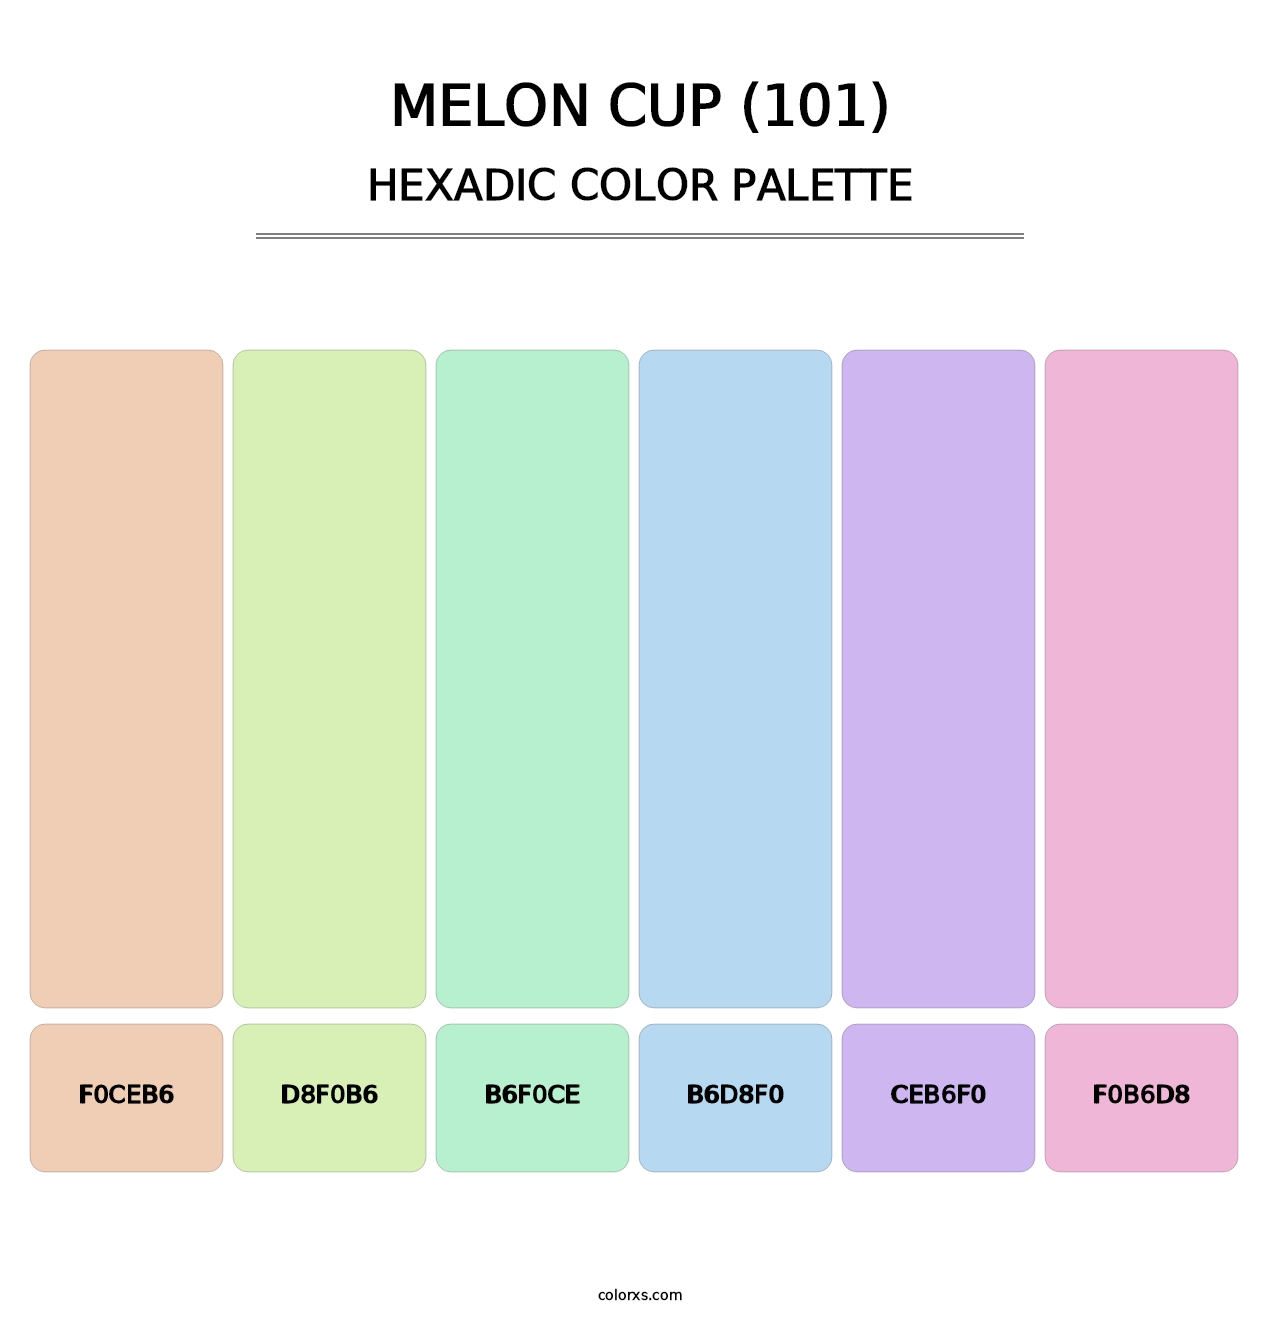 Melon Cup (101) - Hexadic Color Palette